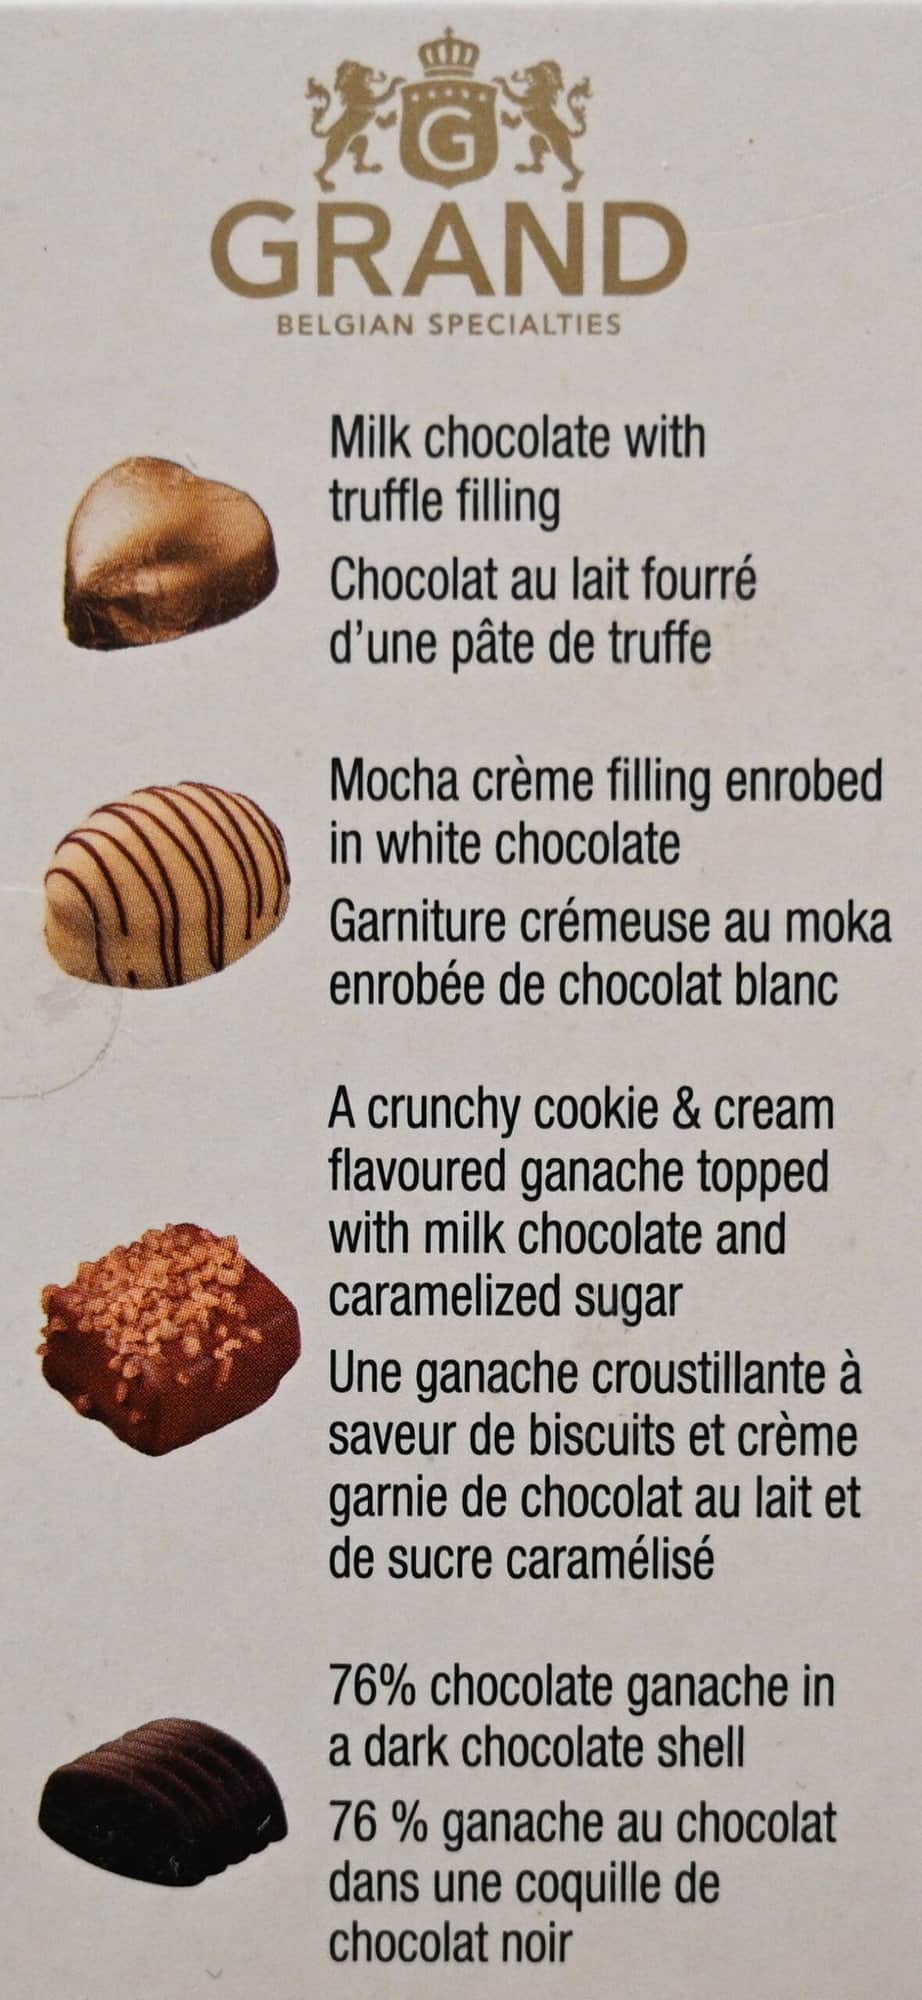 belgian chocolate costco